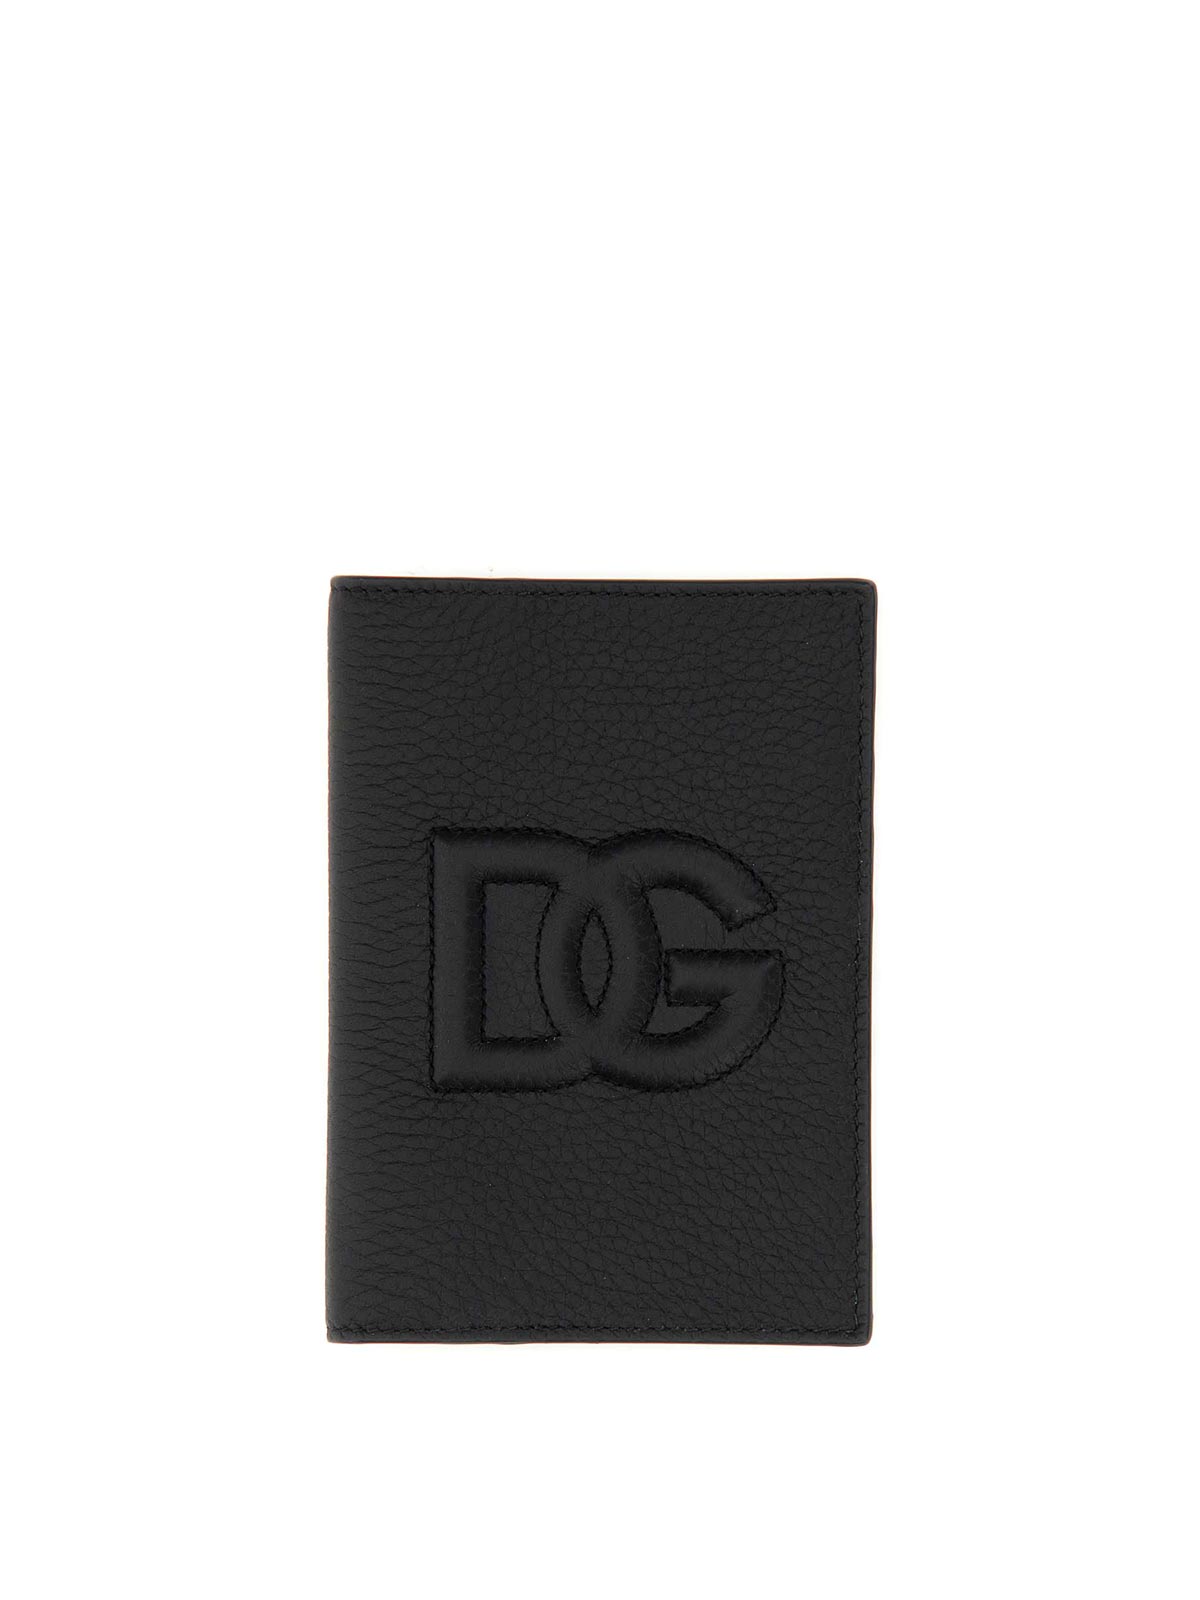 Dolce & Gabbana Leather Passport Holder In Burgundy